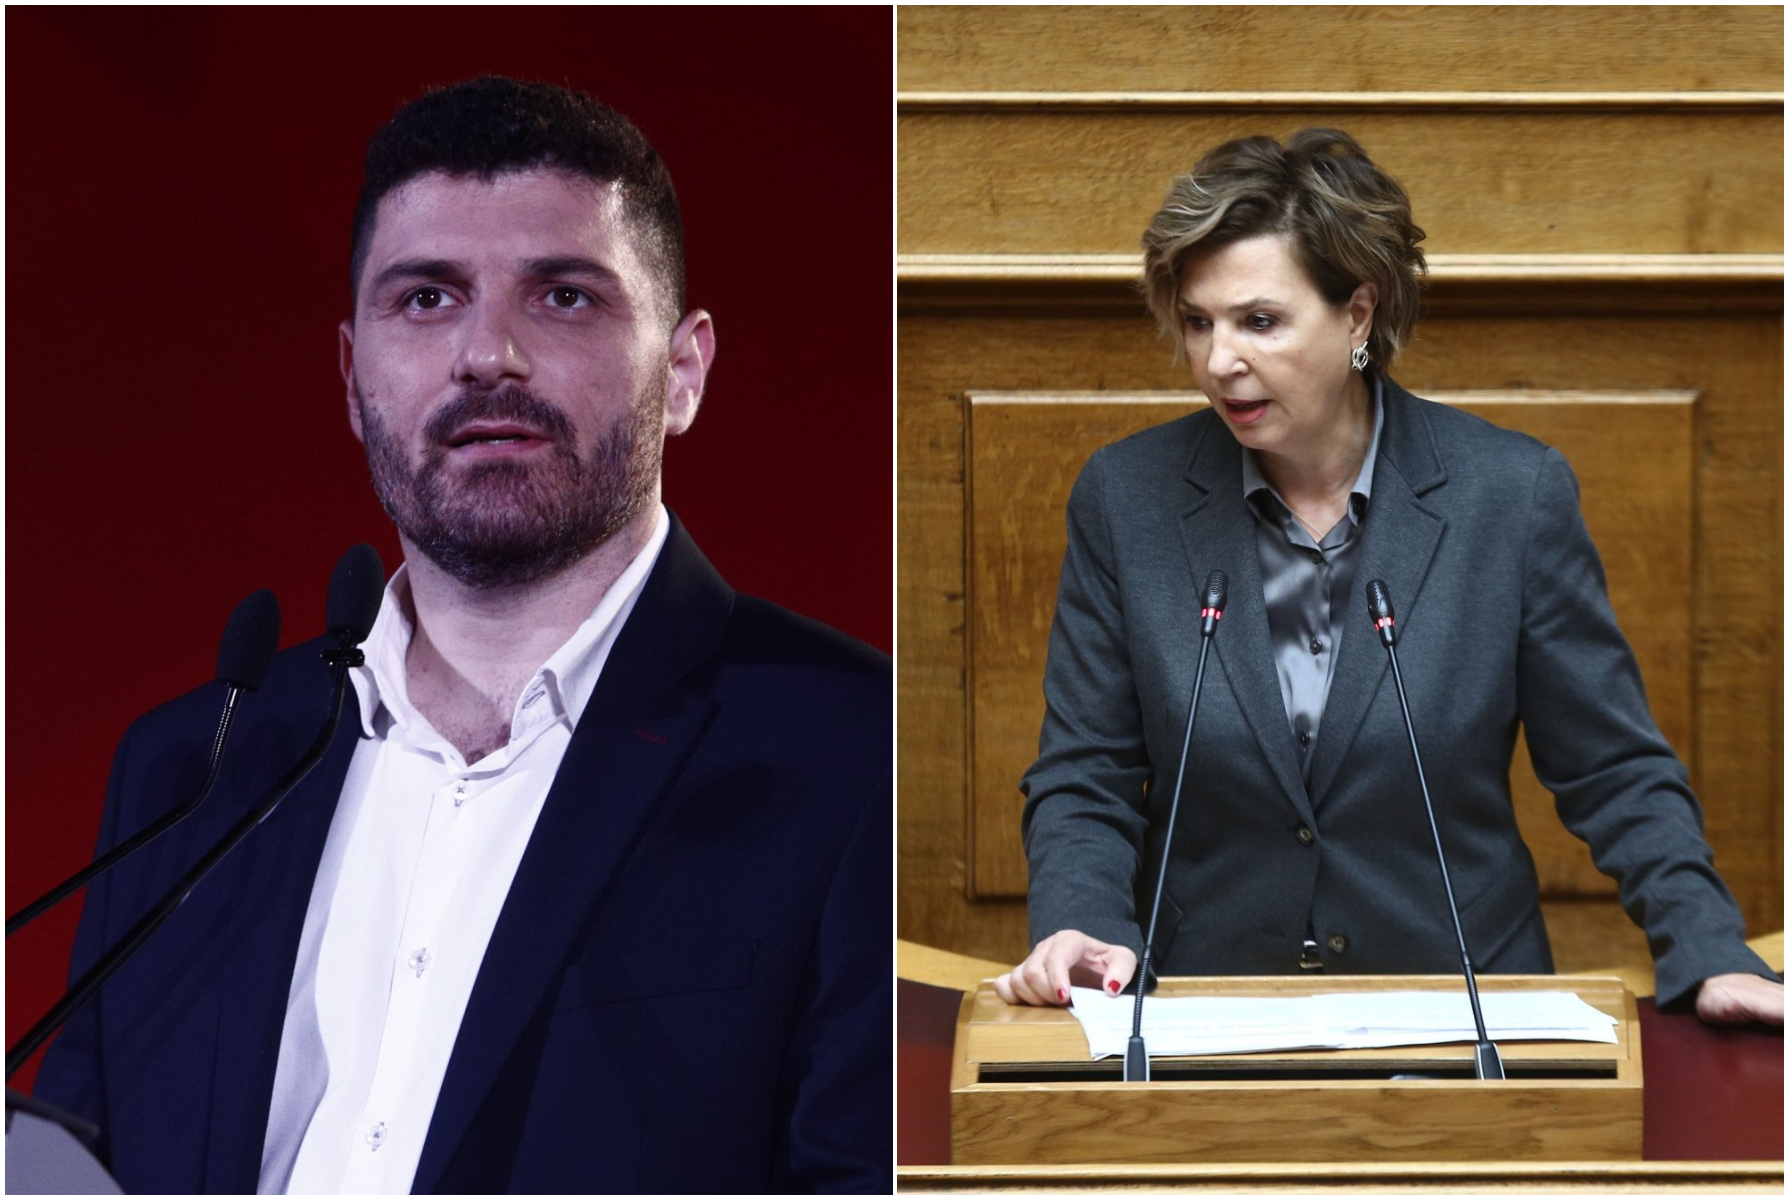 ΣΥΡΙΖΑ: Συνάντηση Γεροβασίλη - Τεμπονέρα στη Βουλή